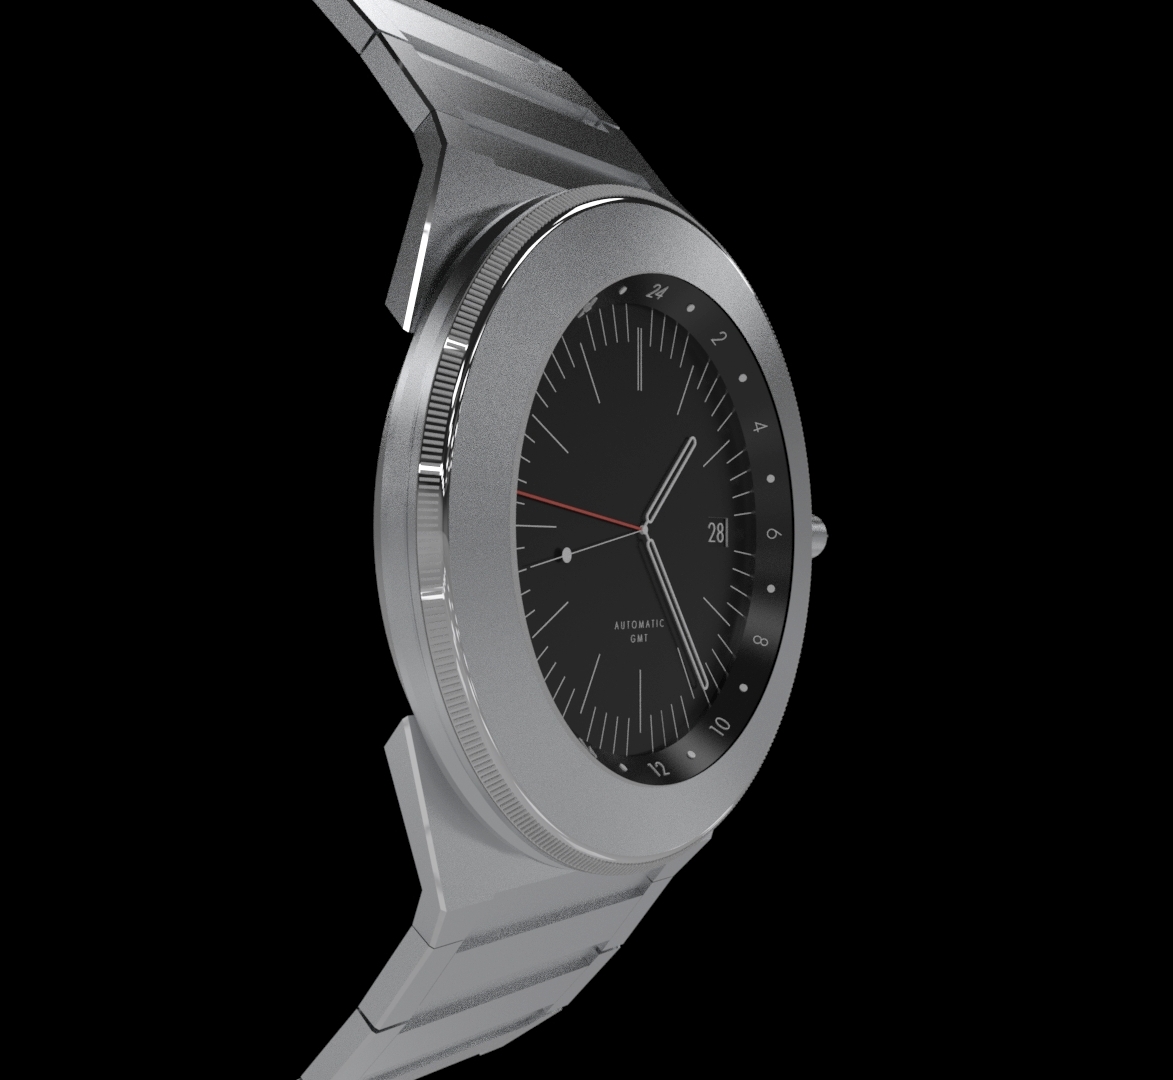 render-watch-arturo-tedeschi-design-needle-watchporn